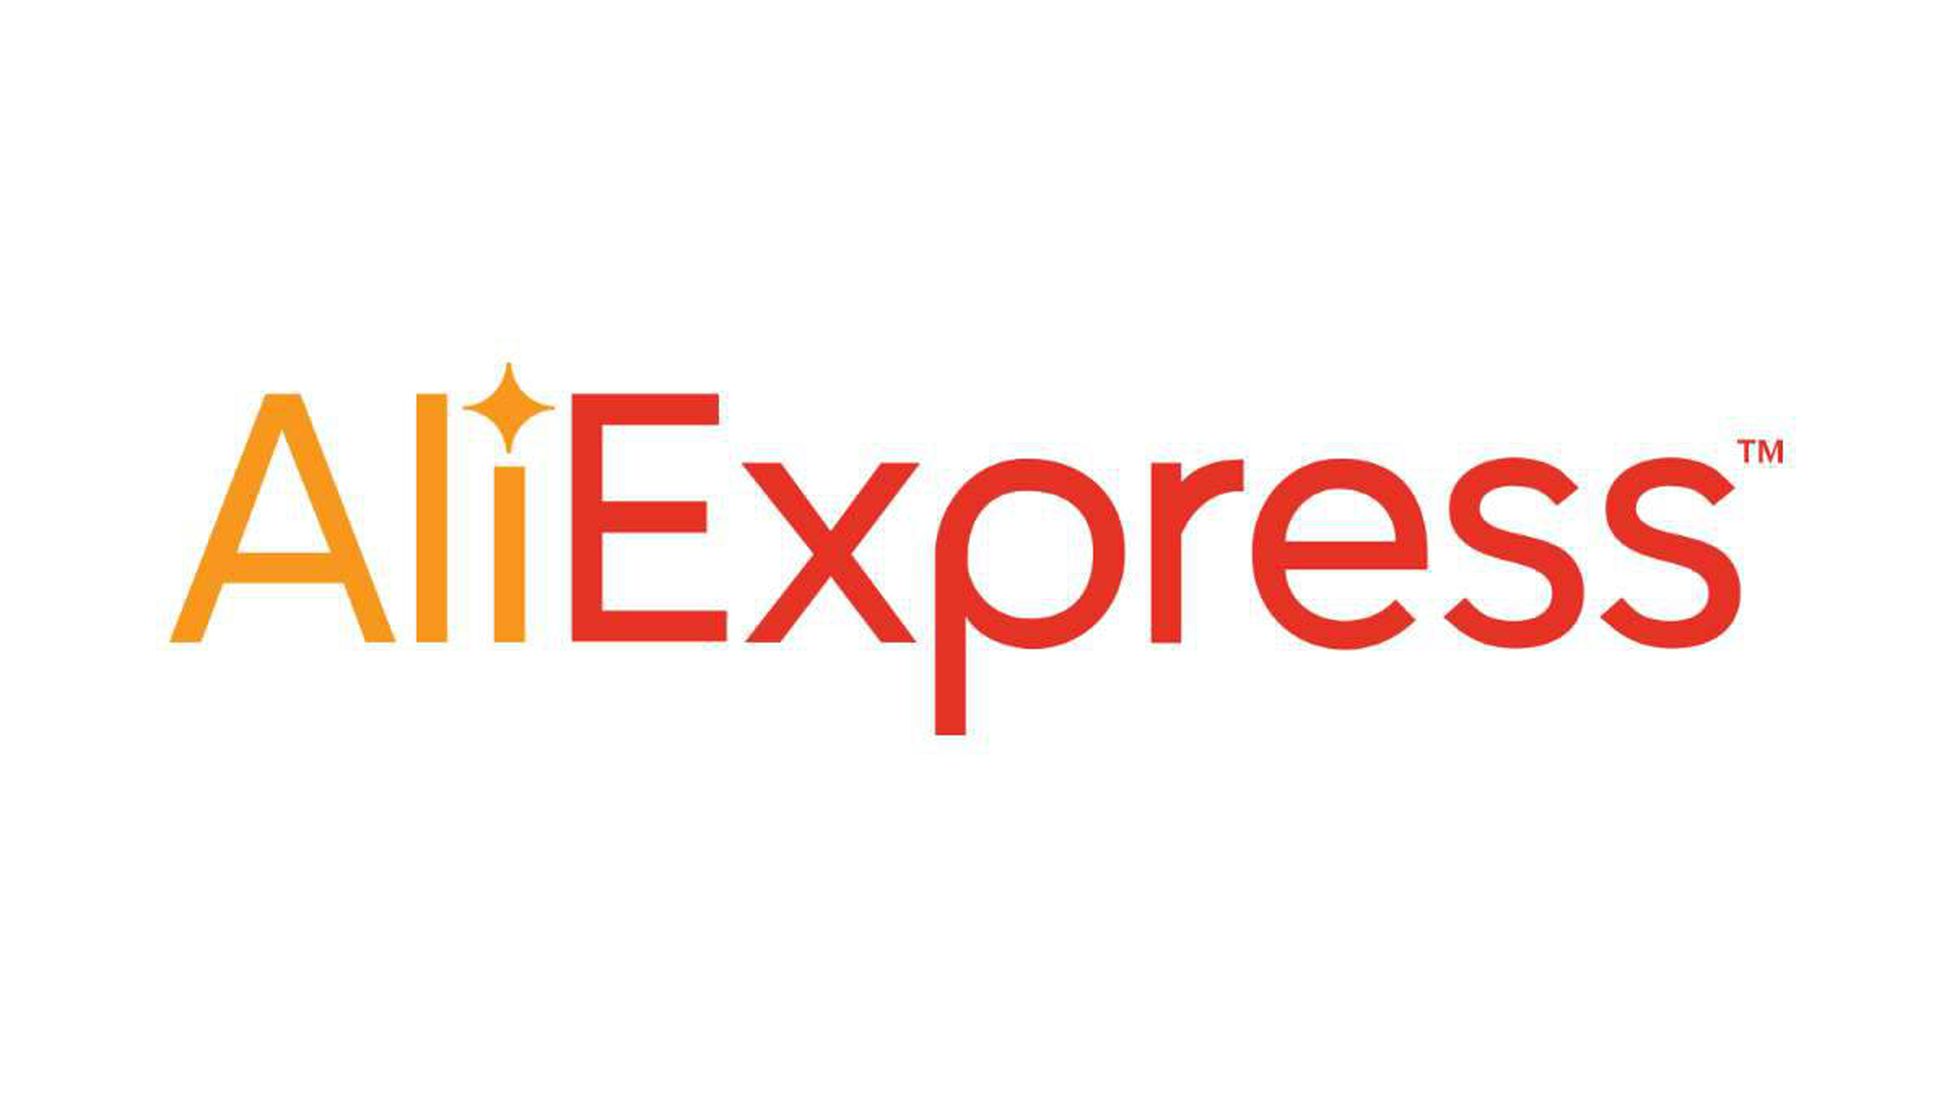 Teléfono Aliexpress España